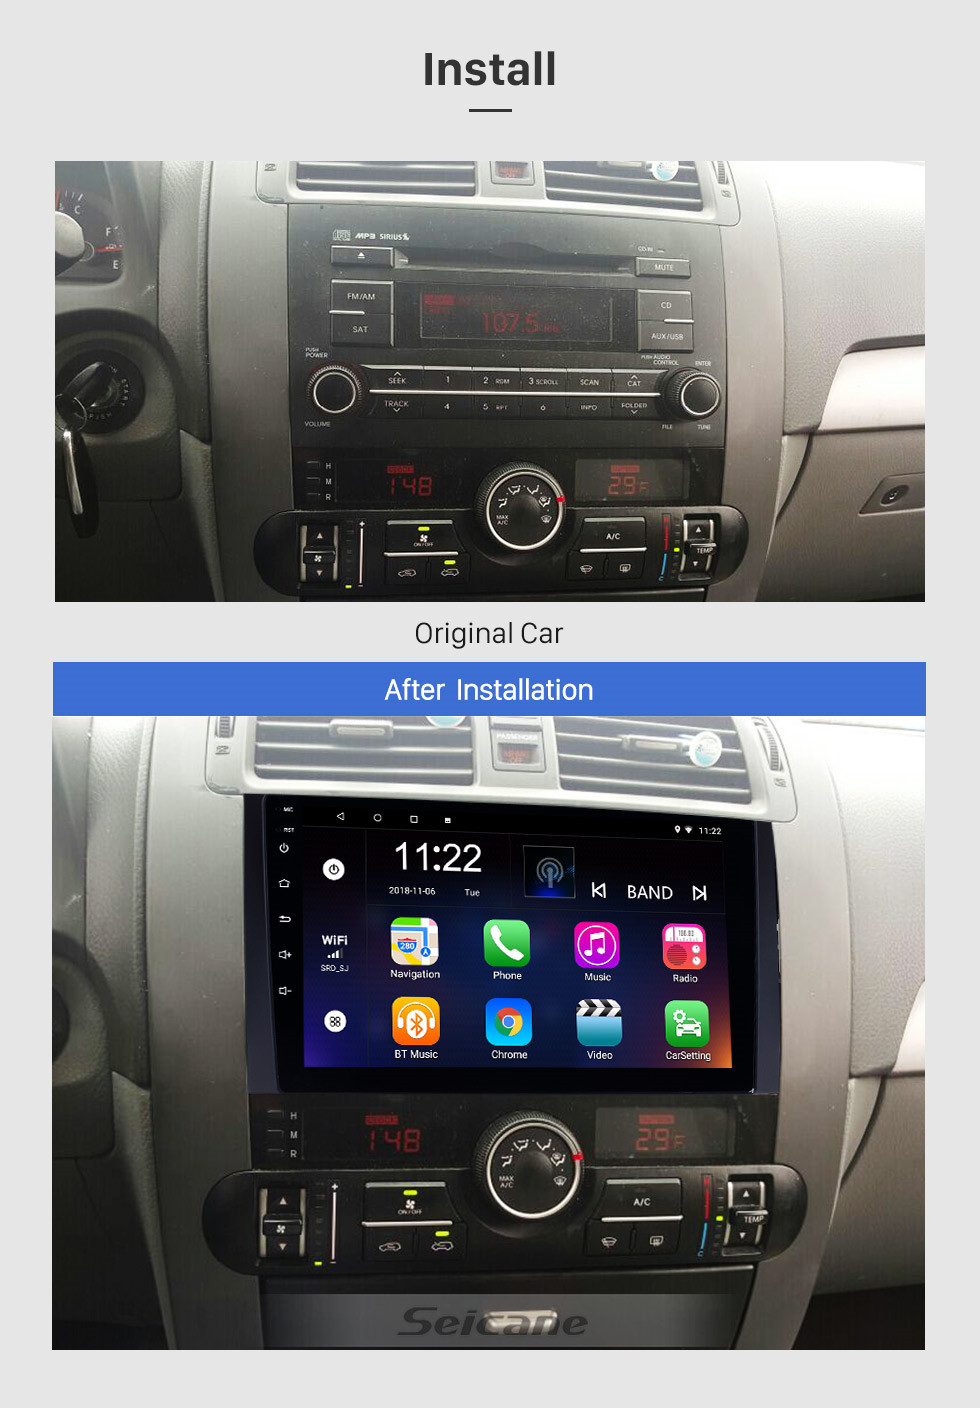 Seicane 9 pouces Android 10.0 Radio à écran tactile Bluetooth Système de navigation GPS pour 2008-2016 KIA Borrego MOHAVE avec TPMS DVR OBD II USB 3G WiFi Caméra arrière Commande au volant HD 1080P Vidéo AUX